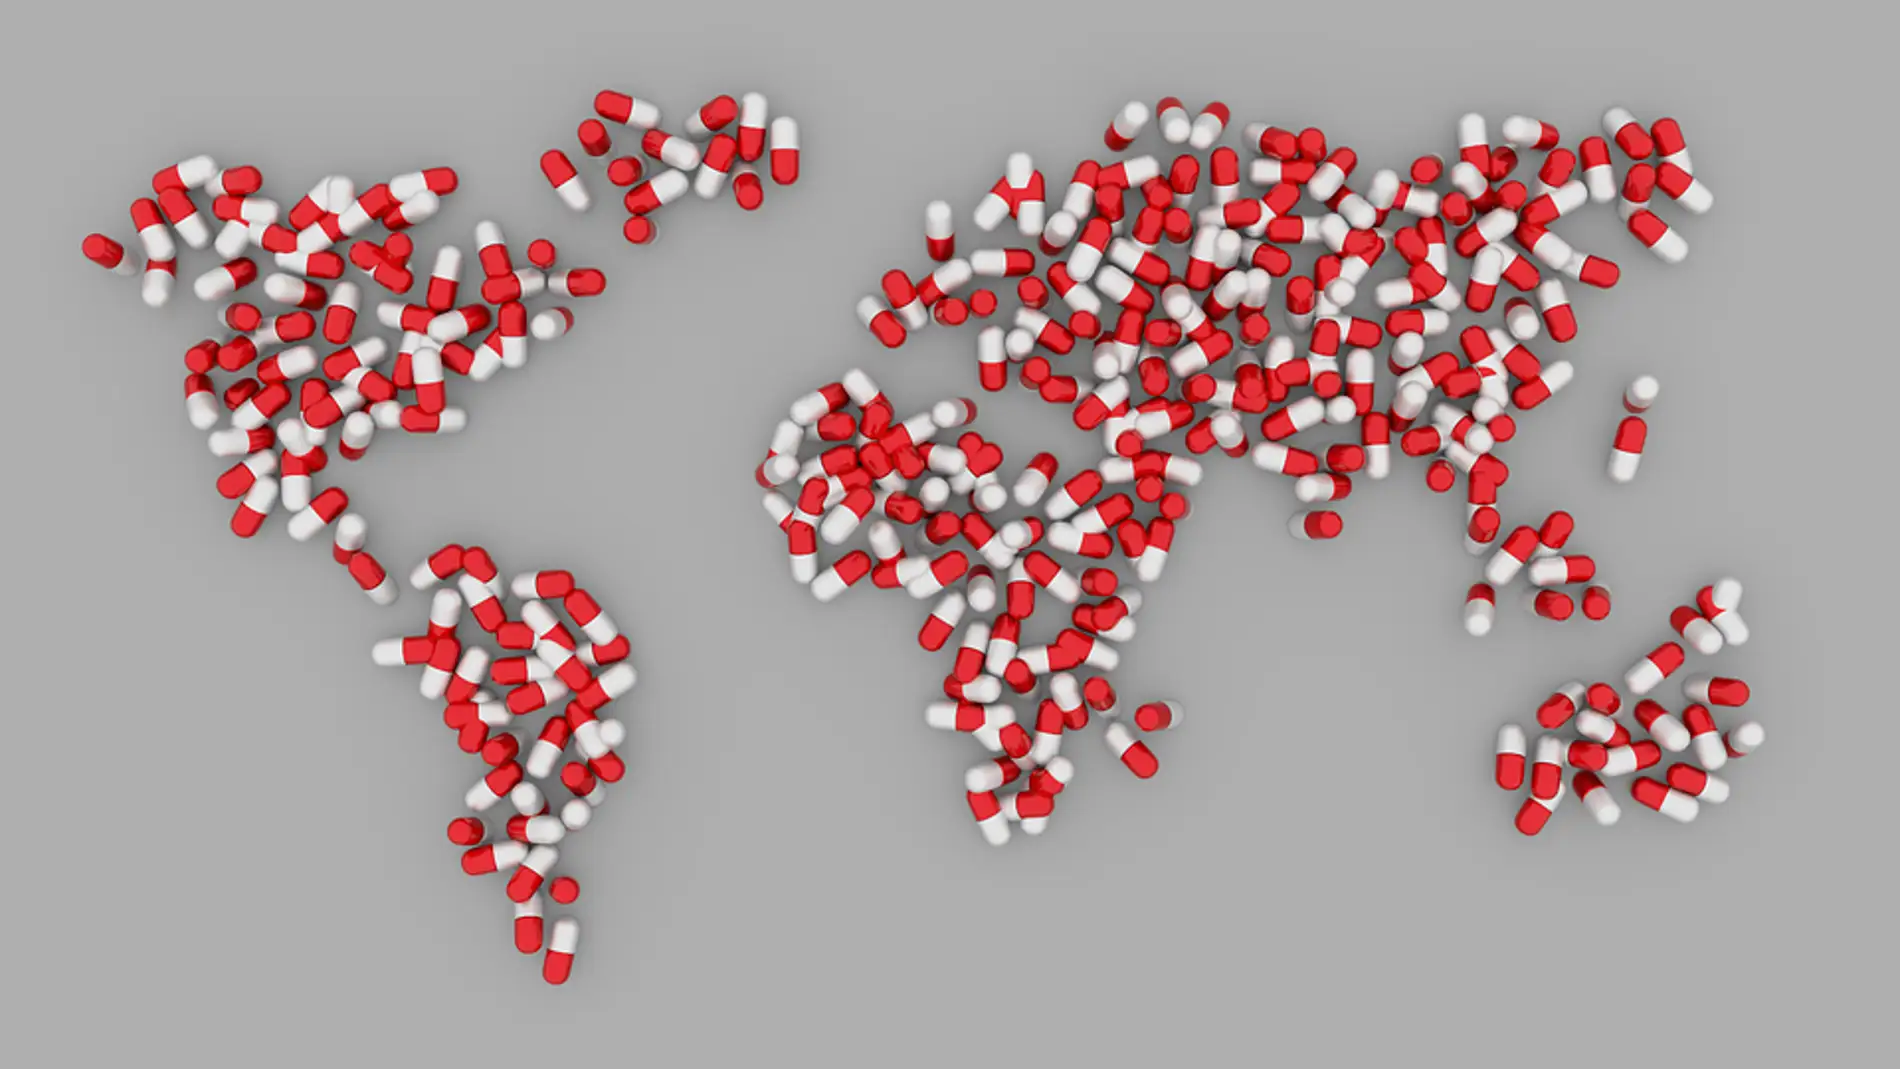 Un mundo de píldoras